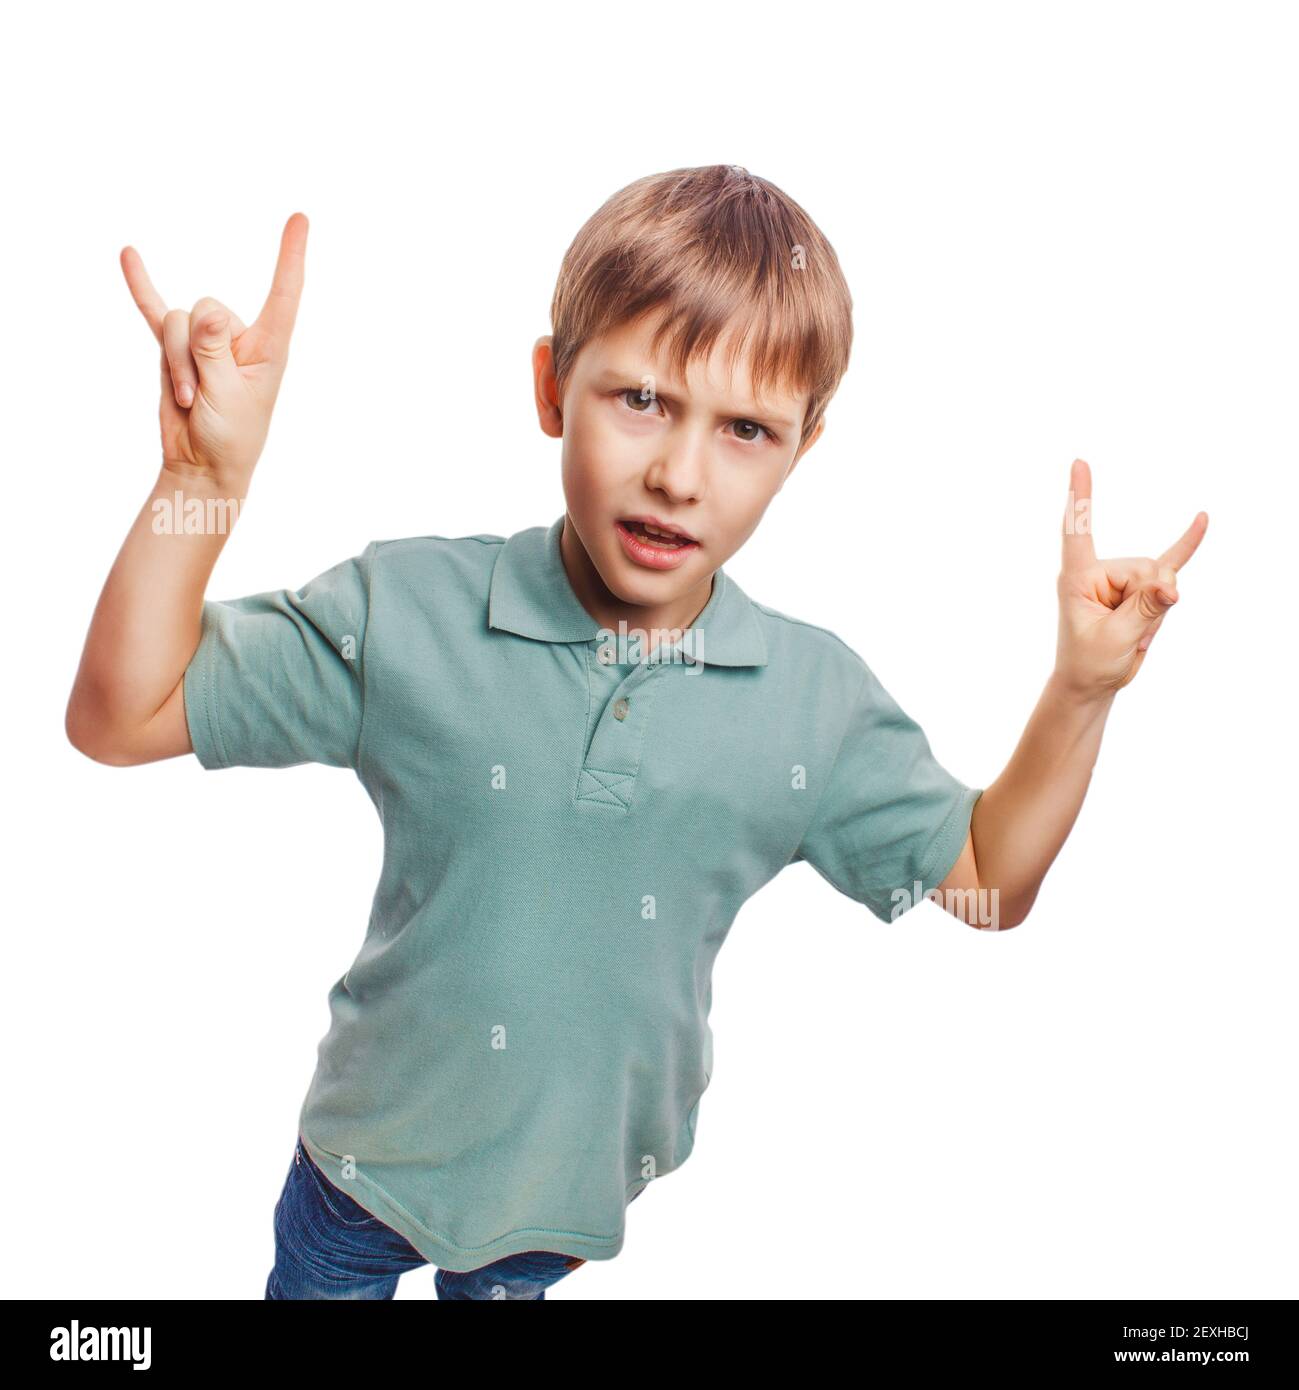 Garçon adolescent montre gestuelle mains métal diable isolé sur wh Banque D'Images